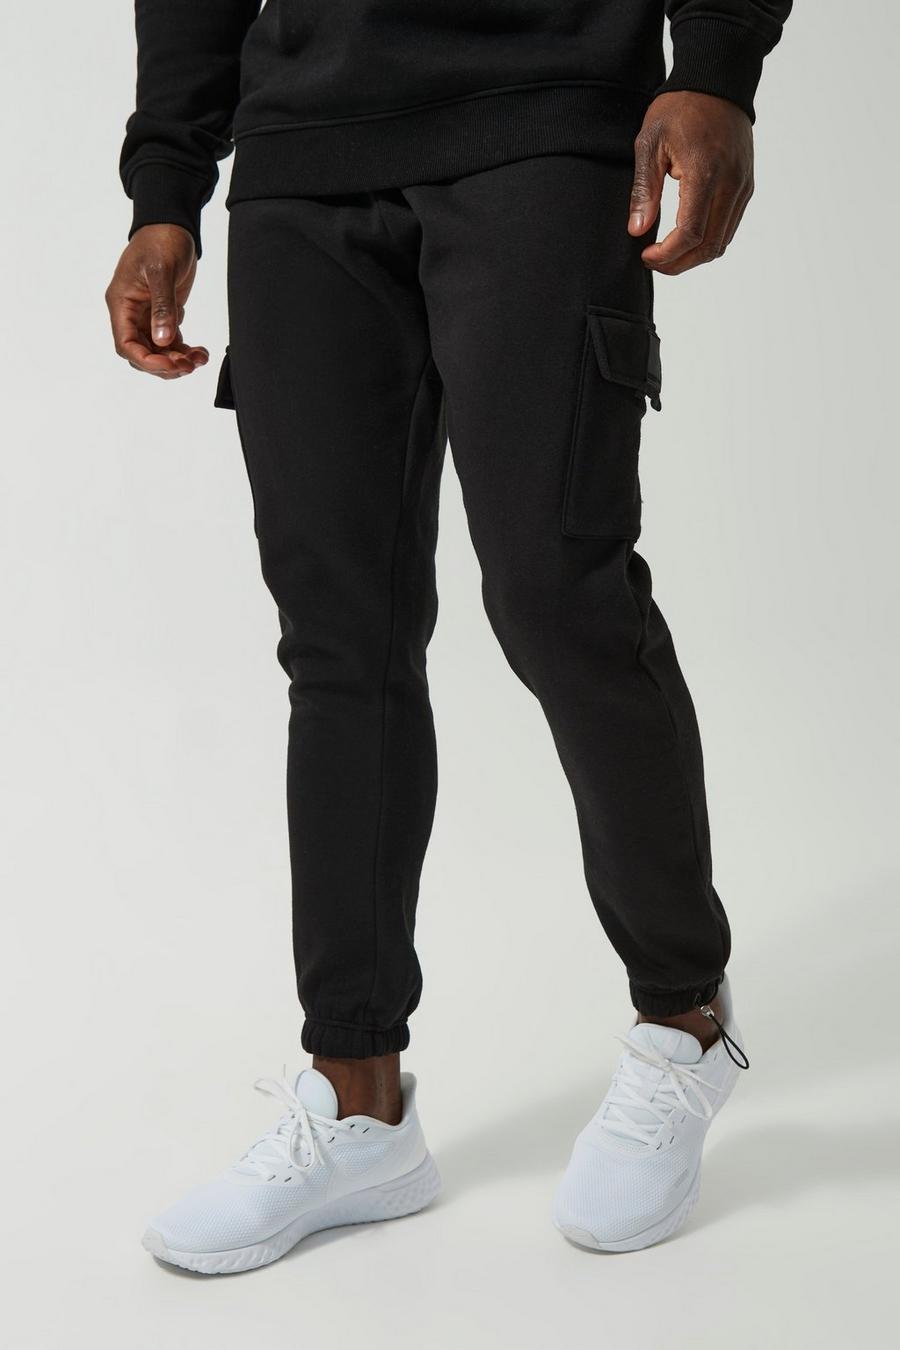 Pantaloni tuta Cargo Man Active Gym con polsini alle caviglie e fermacorde, Black nero